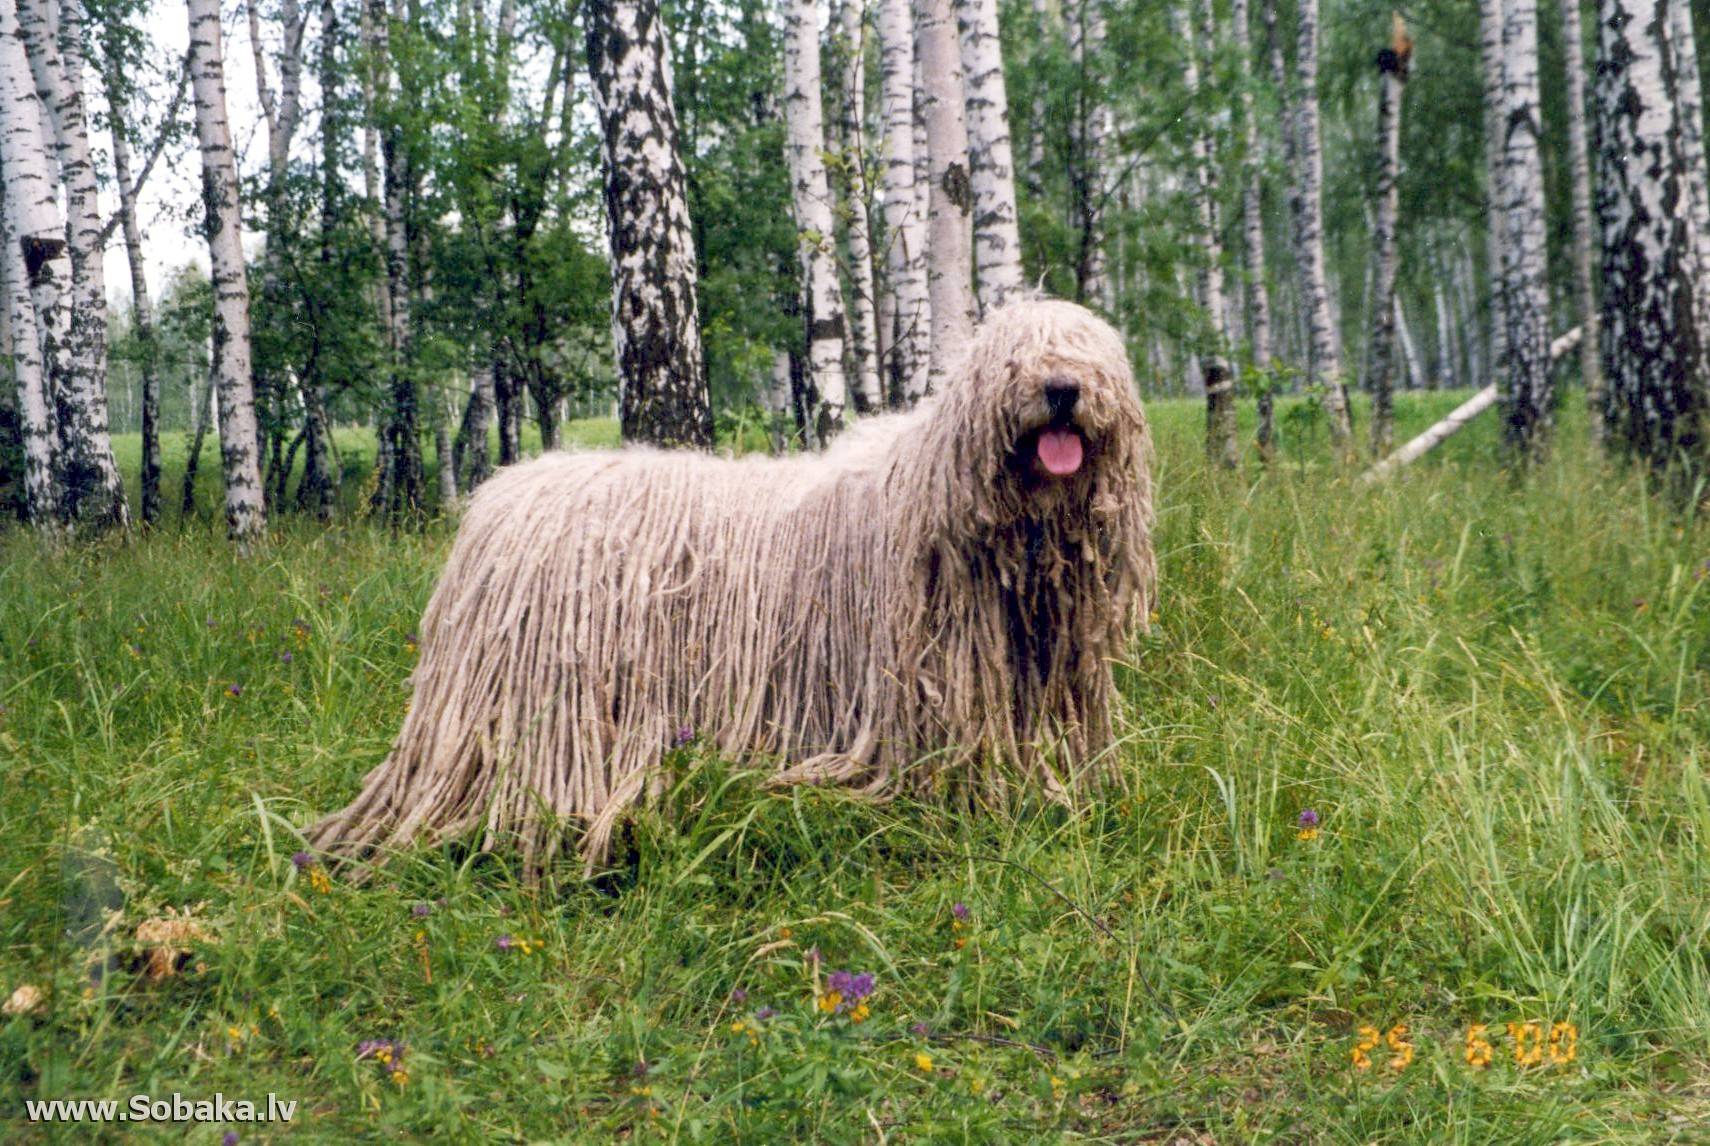 Венгерская овчарка комондор - фото и описание породы